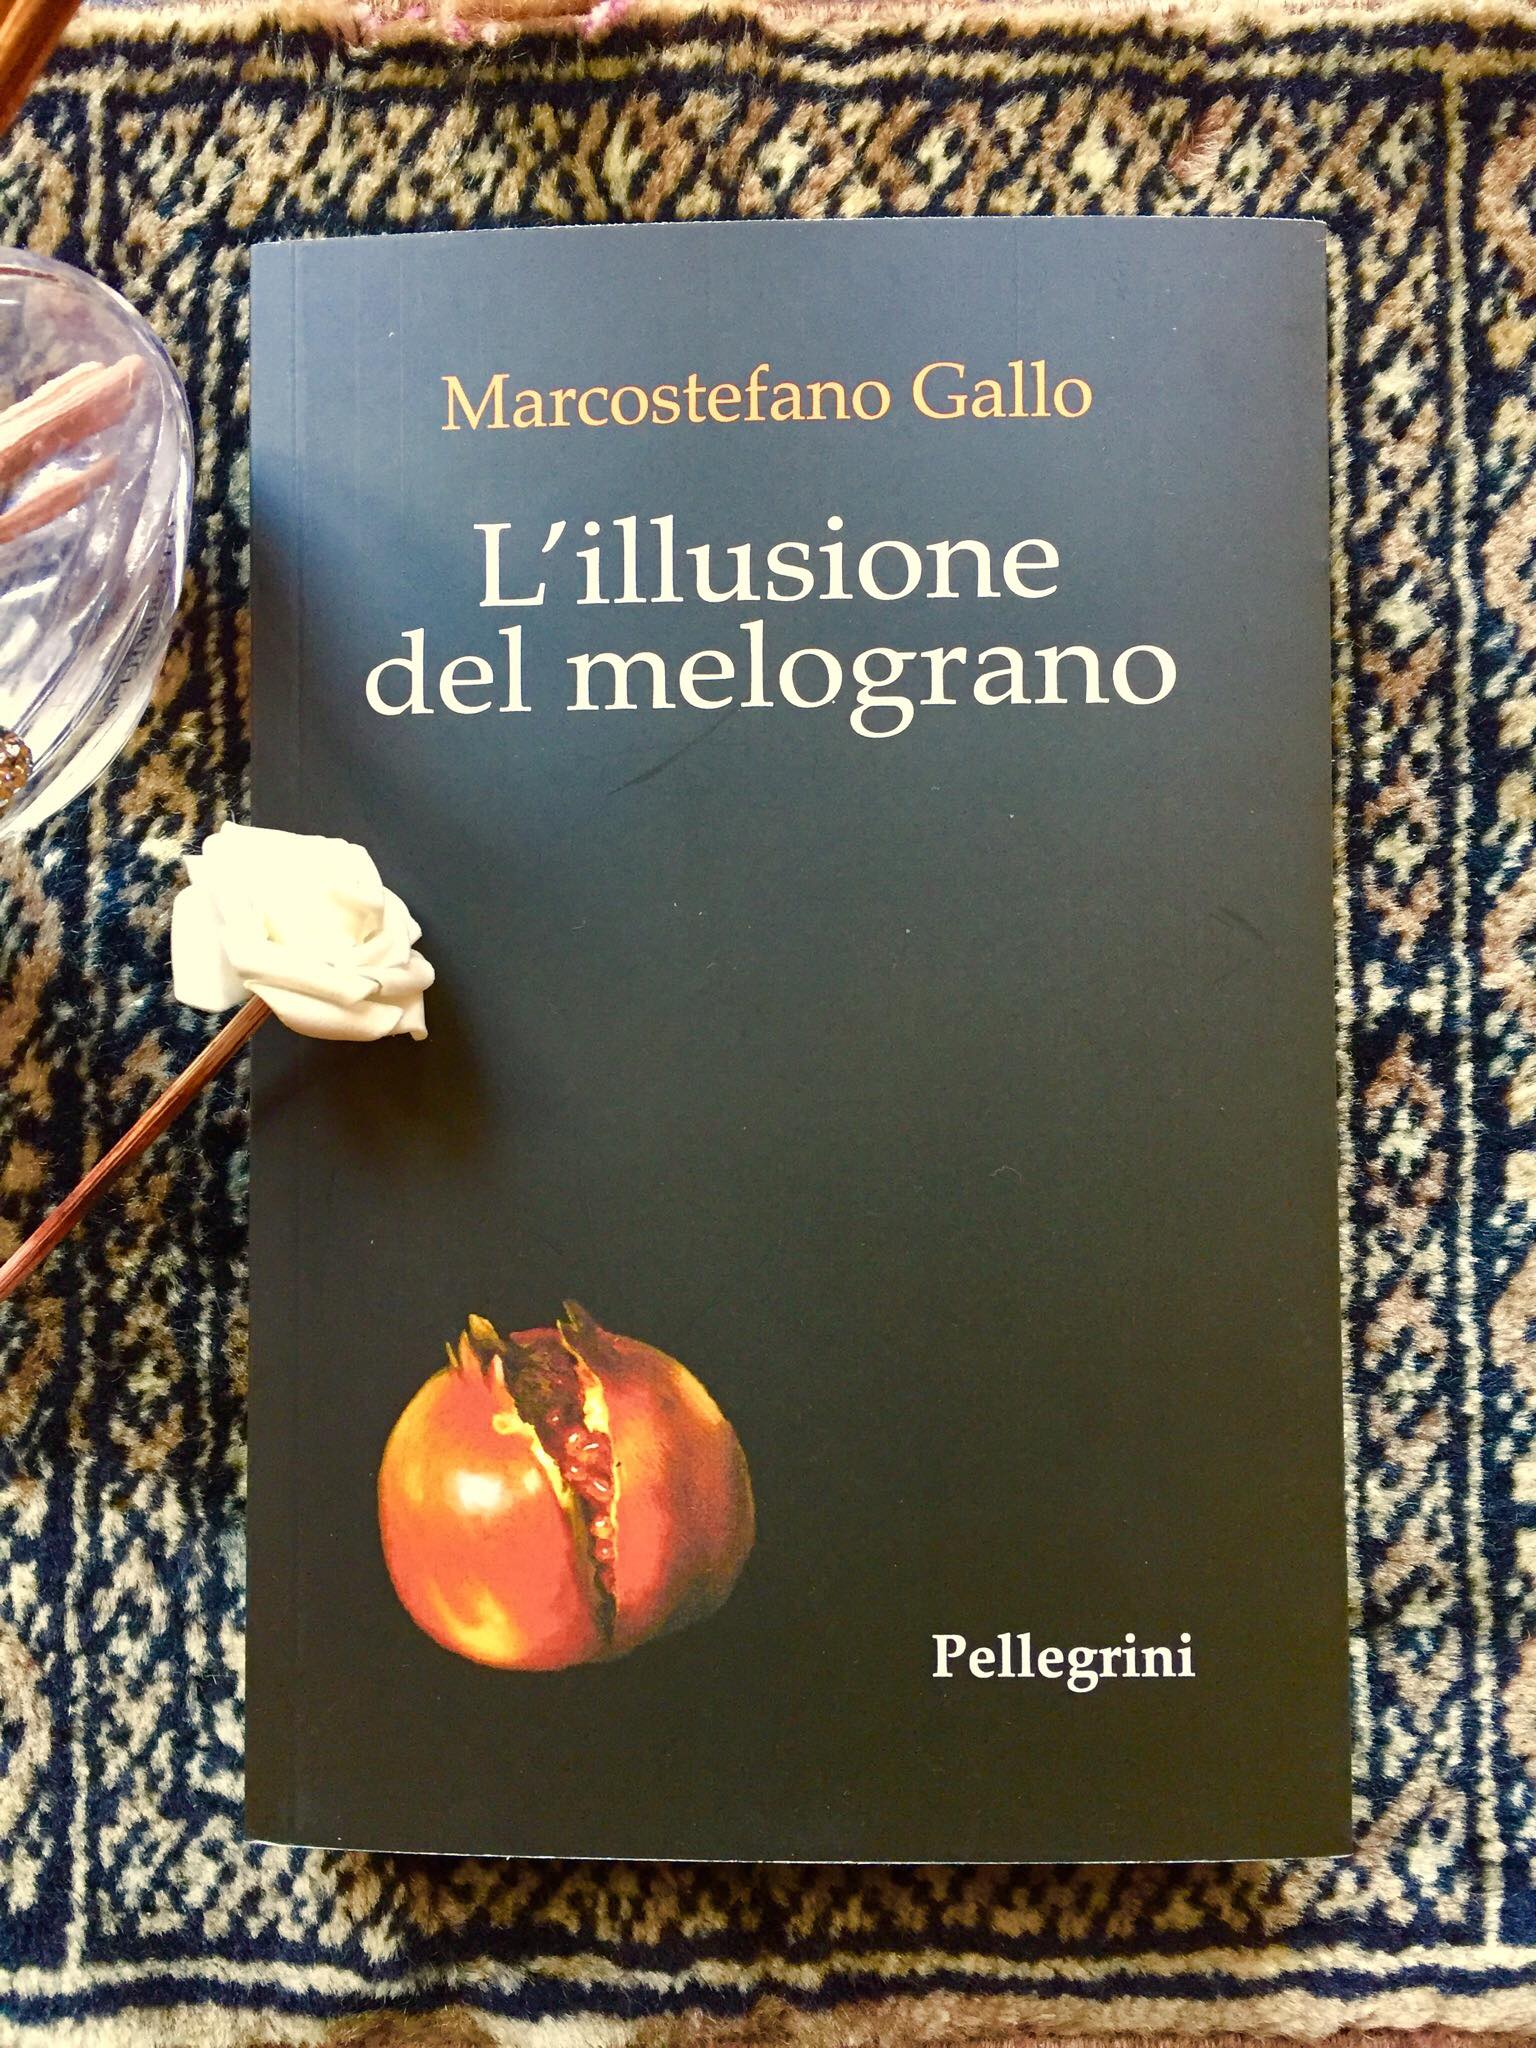 “L’illusione del melograno” – Marcostefano Gallo